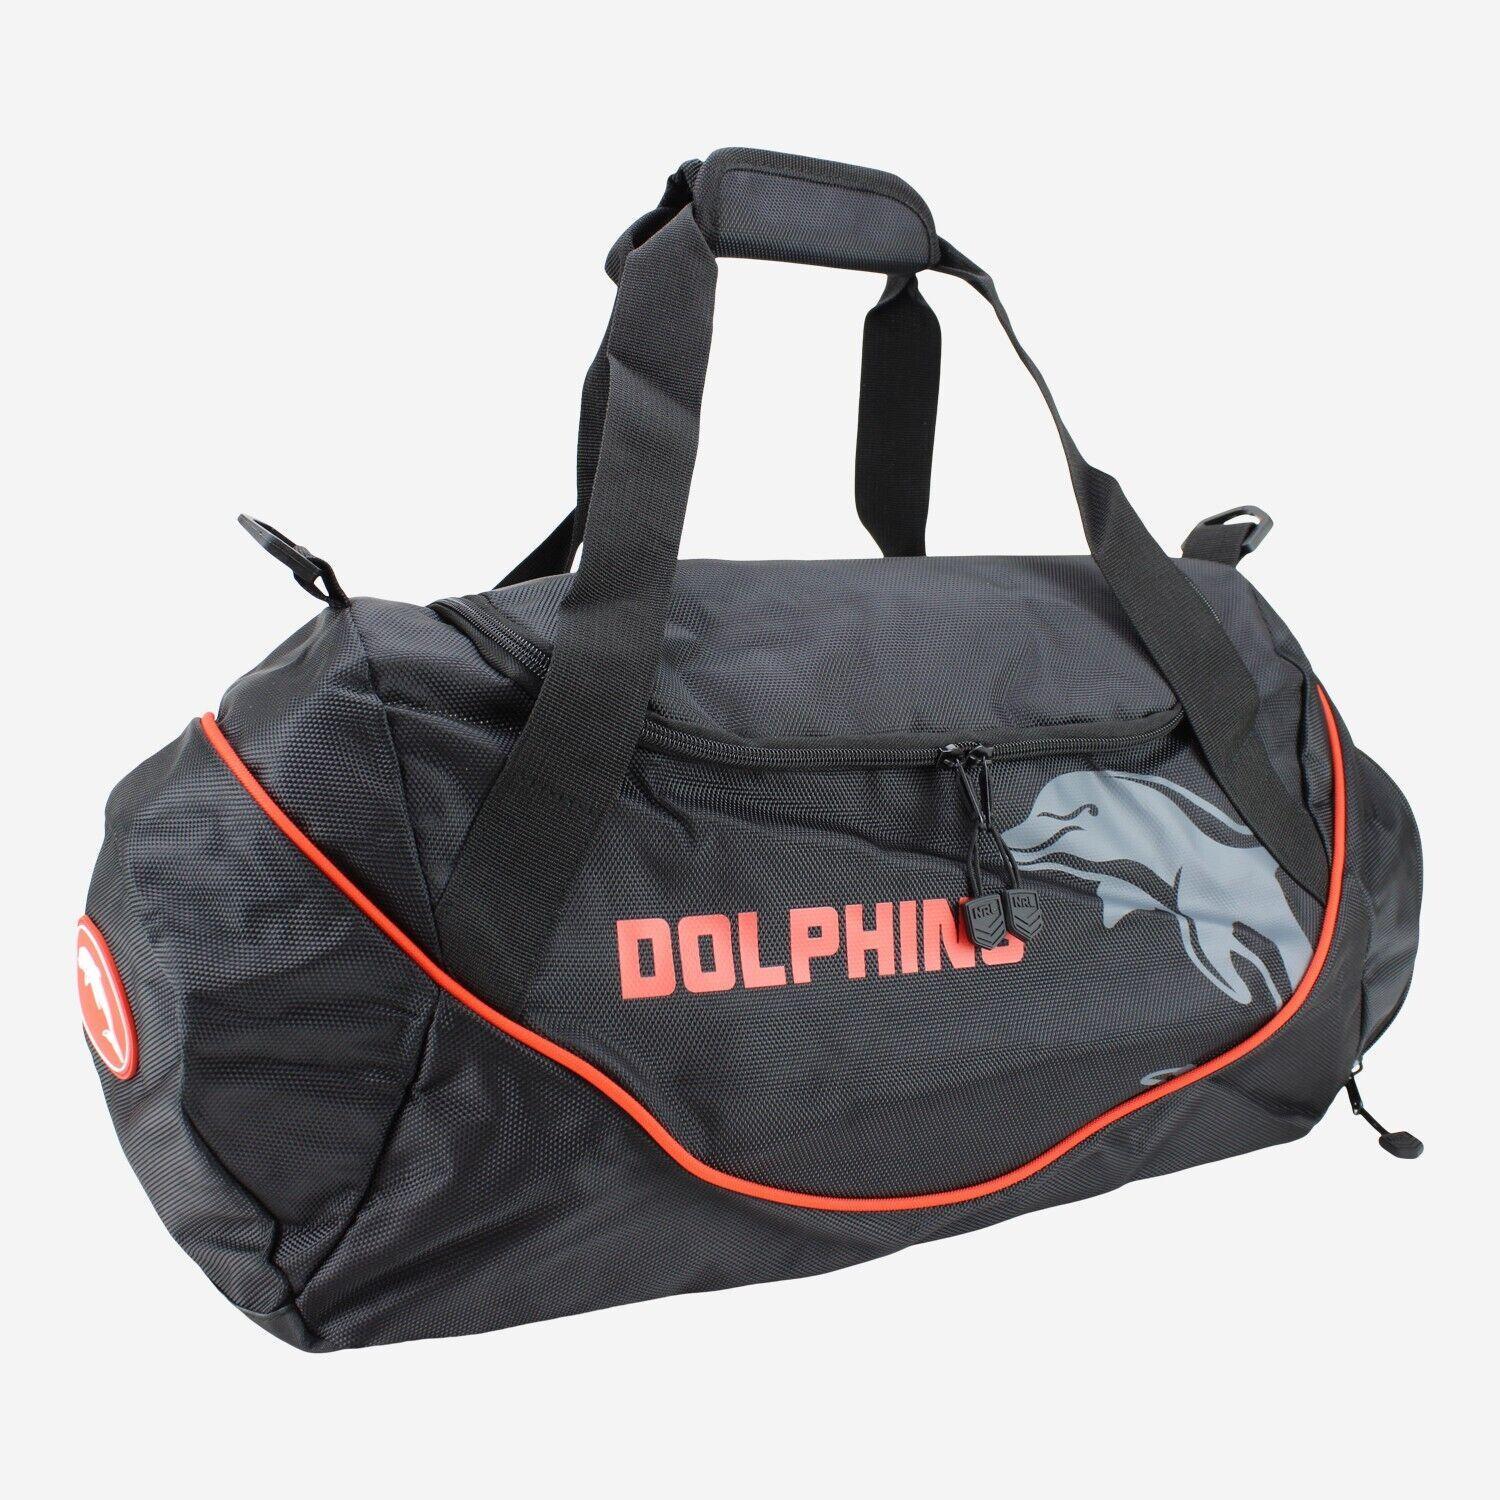 NRL Shadow Sports Bag - Dolphins - Gym Travel Duffle Bag